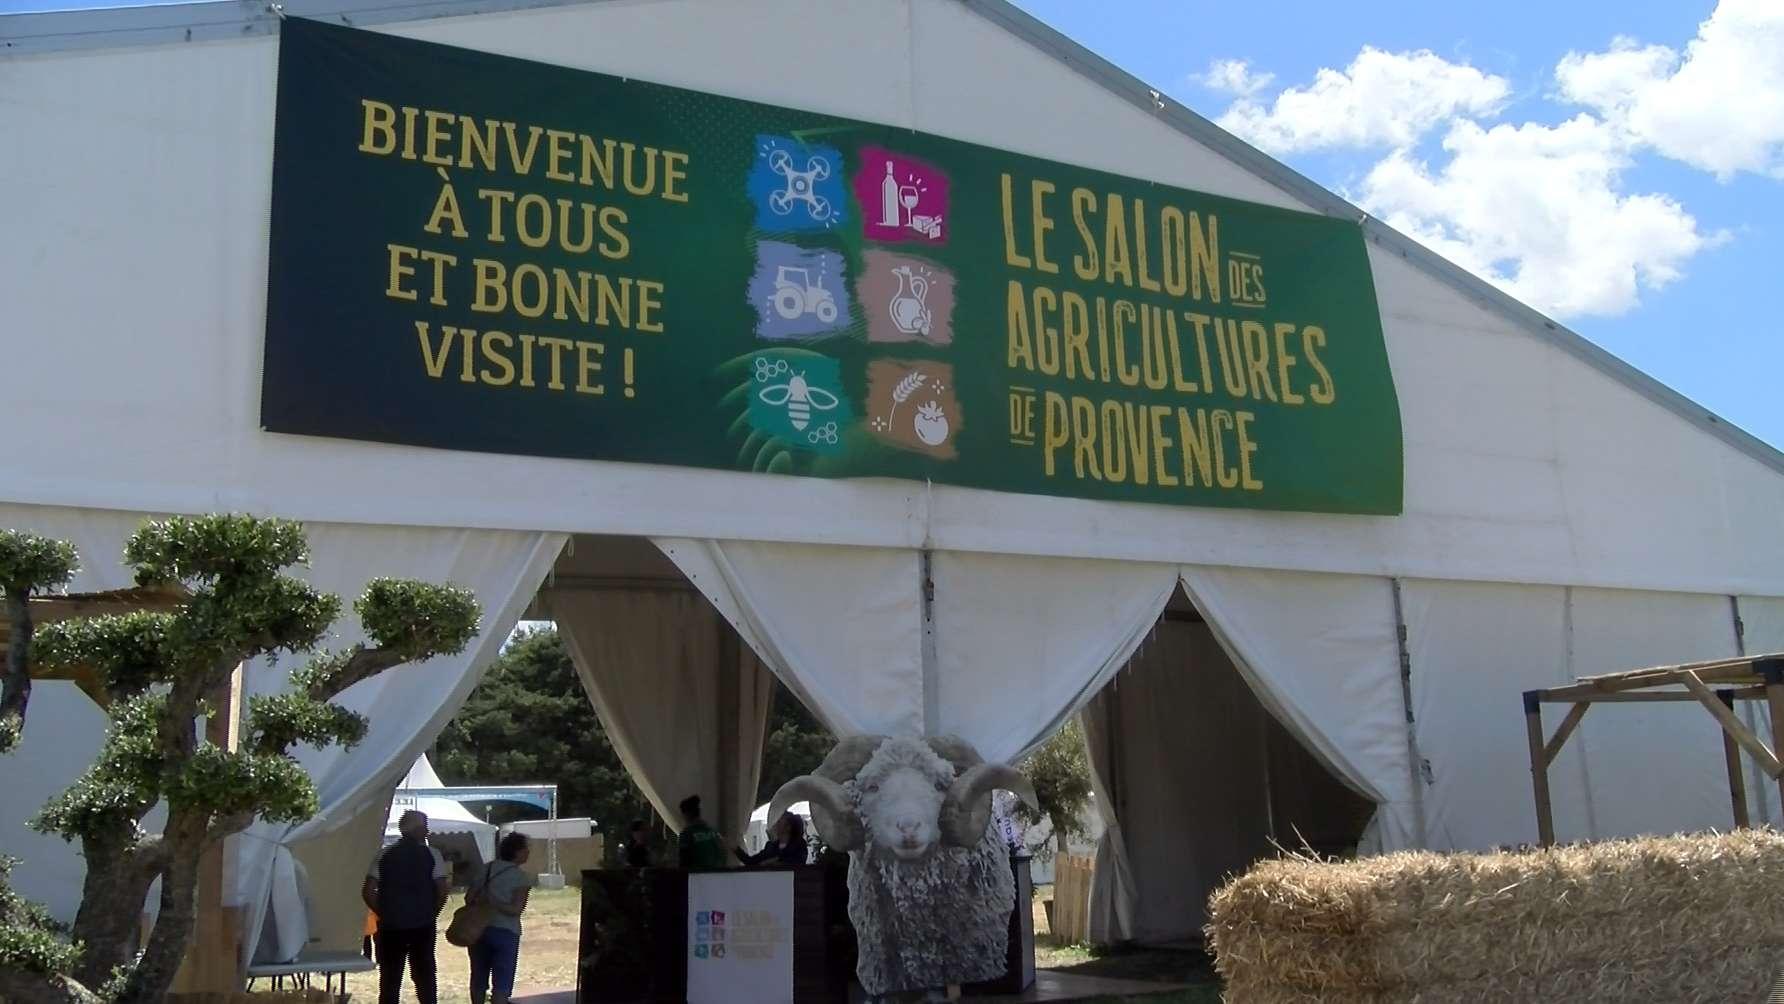 Salon-de-Provence accueille le Salon des agricultures de Provence